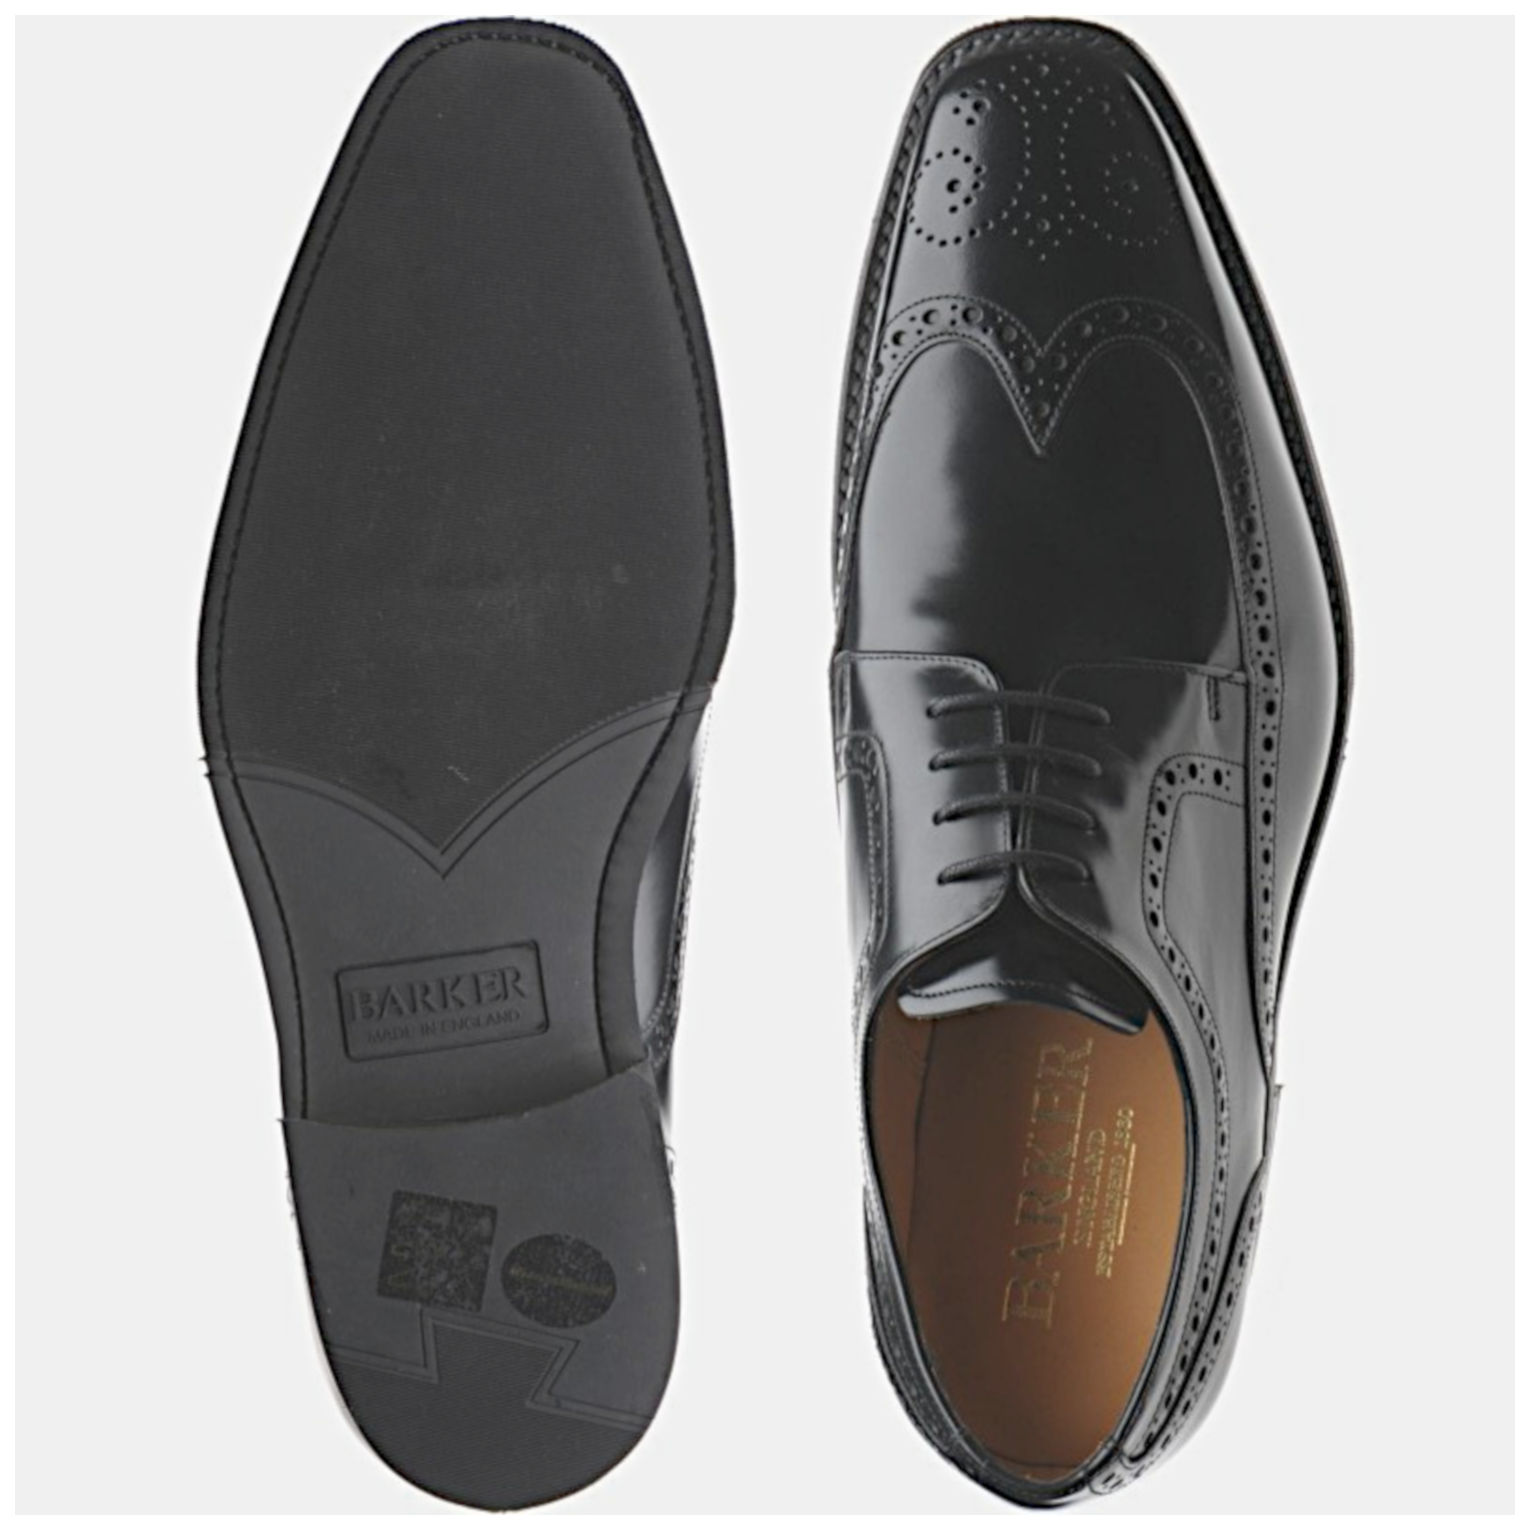 Barker Larry - Pediwear Footwear